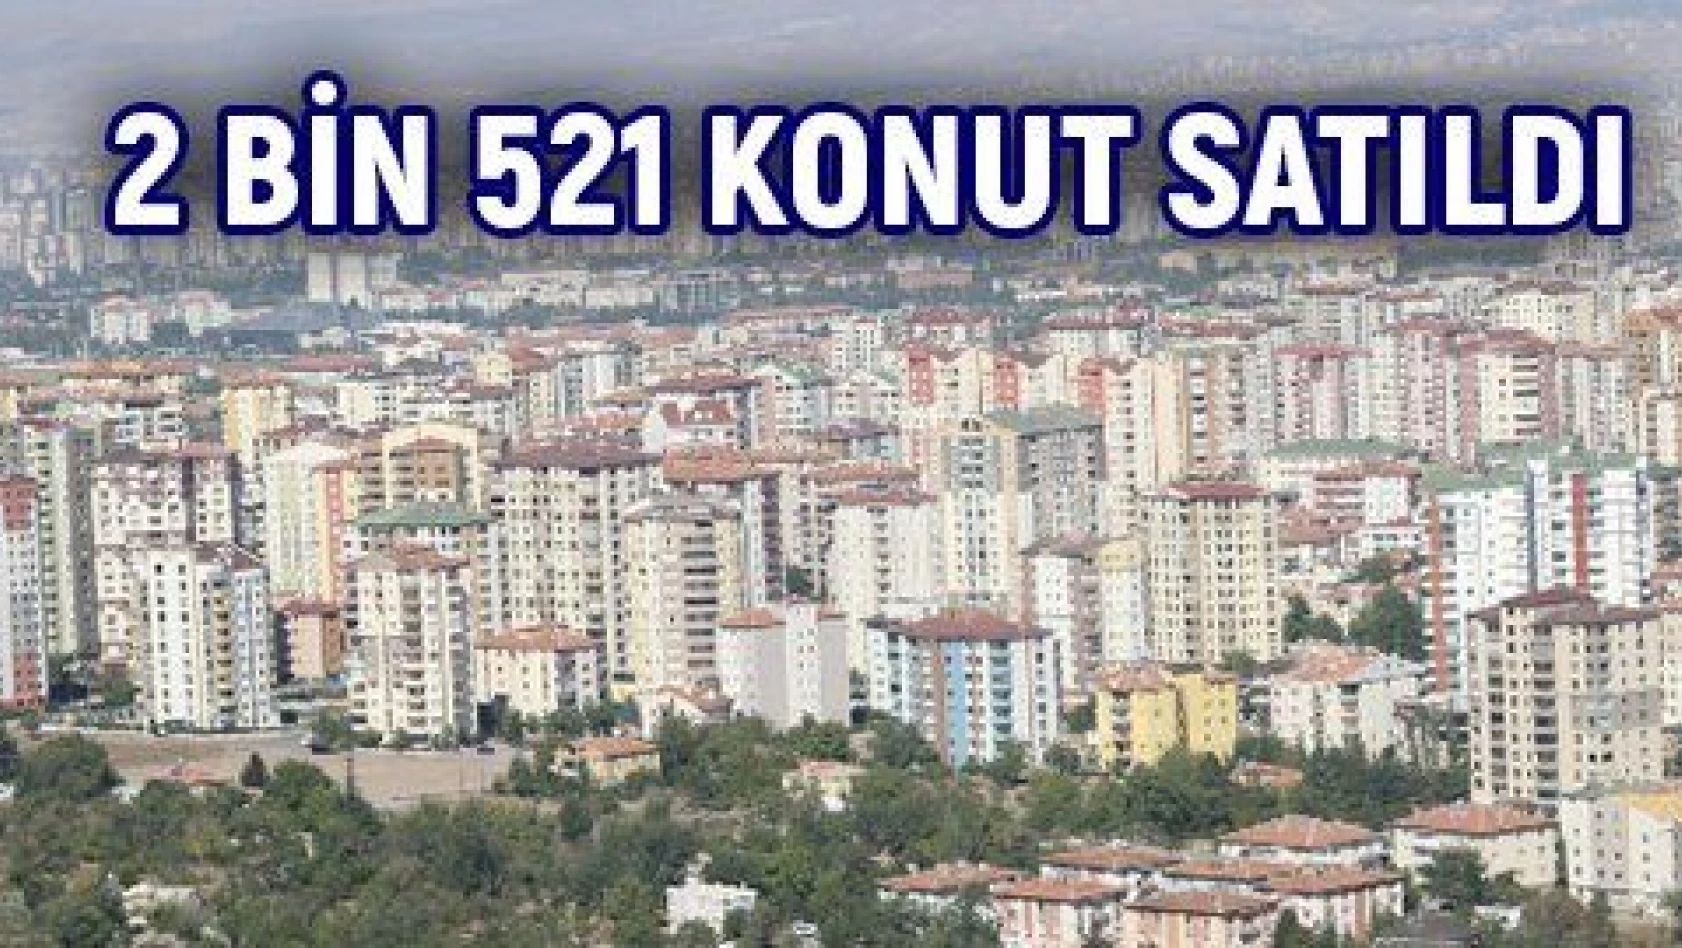 KAYSERİ' DE EYLÜL AYINDA 2 BİN 521 KONUT SATILDI